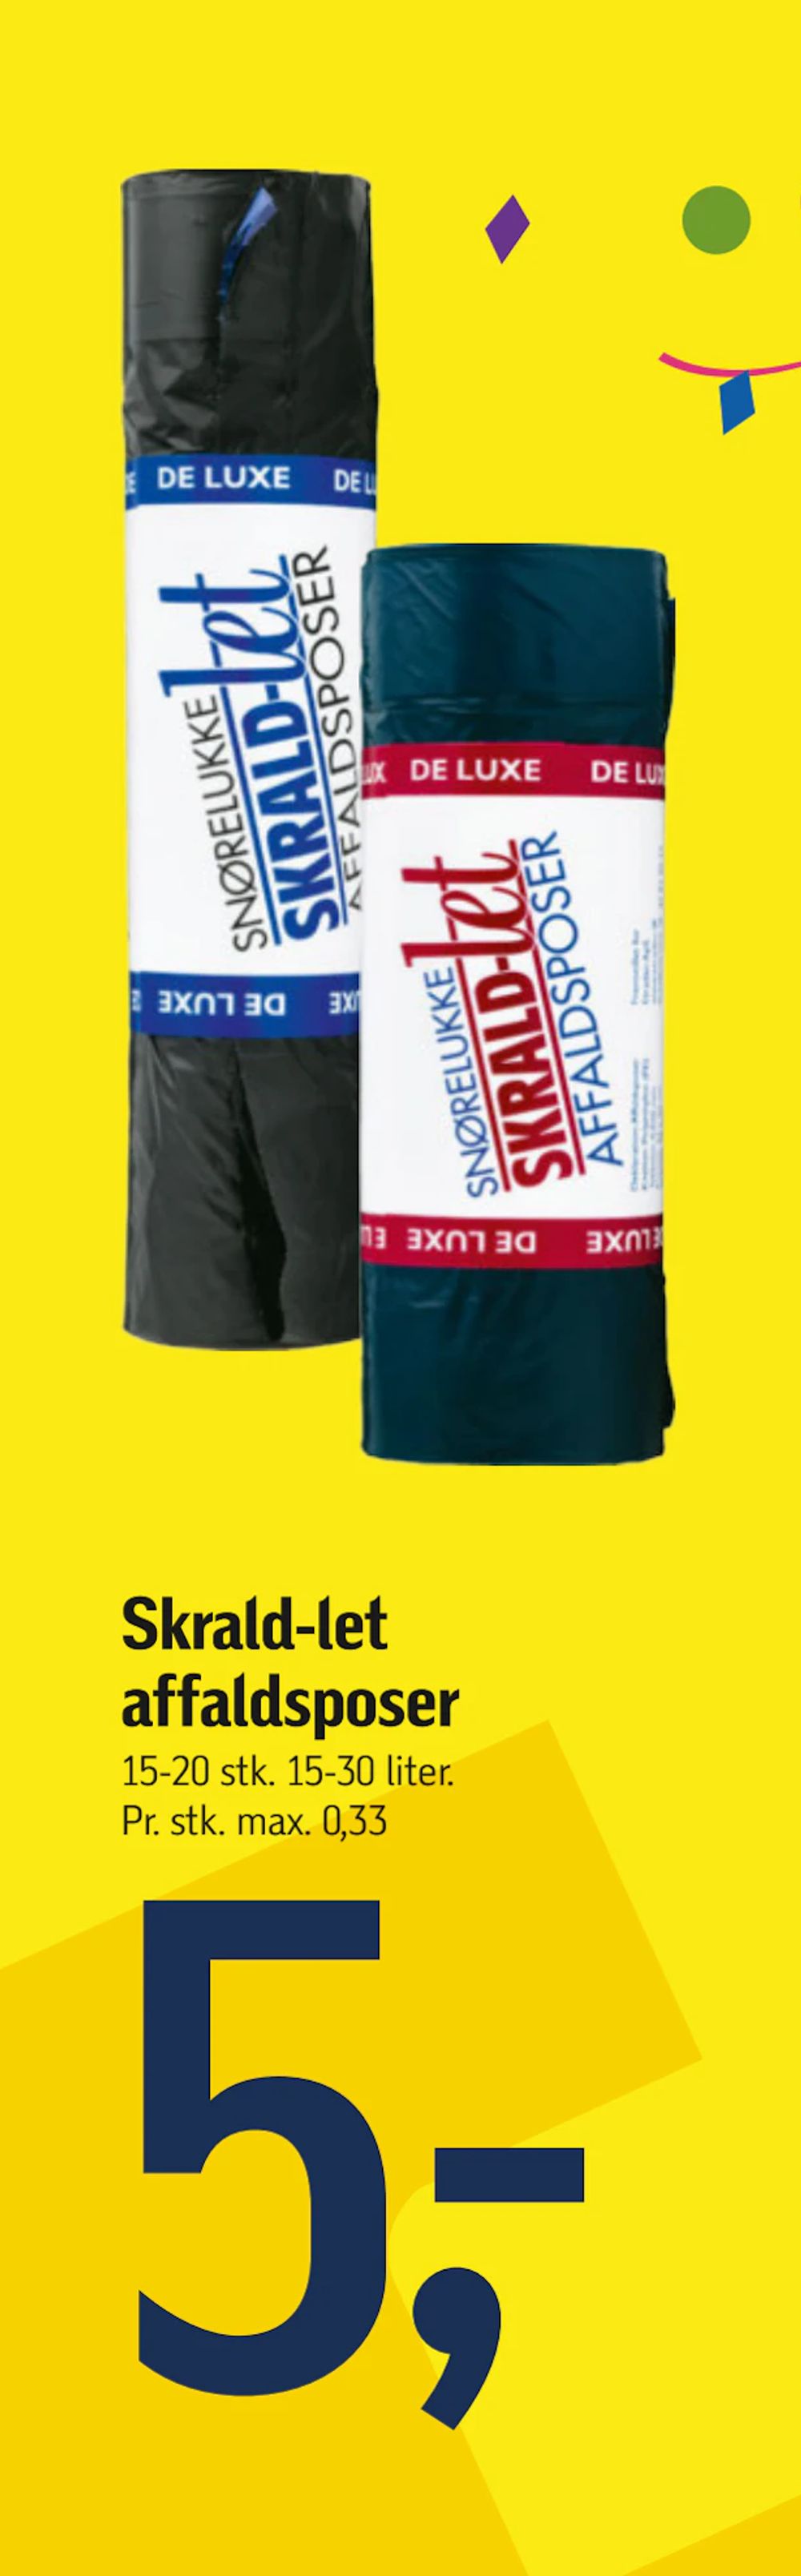 Tilbud på Skrald-let affaldsposer fra føtex til 5 kr.